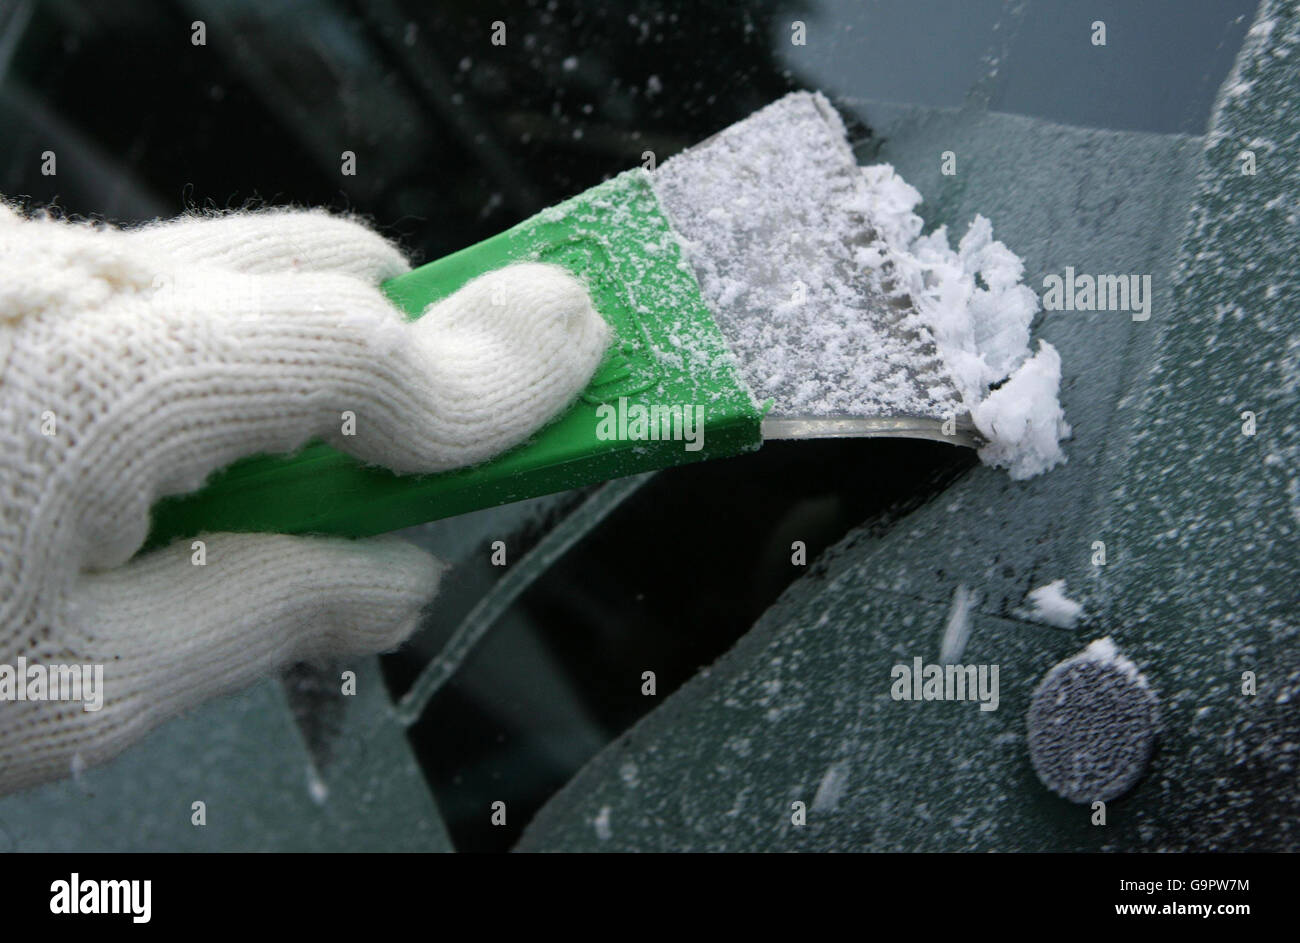 Kaufe Rayhong Schneeschmelzmittel für Windschutzscheiben und Fenster von  Autos im Winter, schnelles und leistungsstarkes Enteisungs-, Enteisungs-  und Schneereinigungsmittel